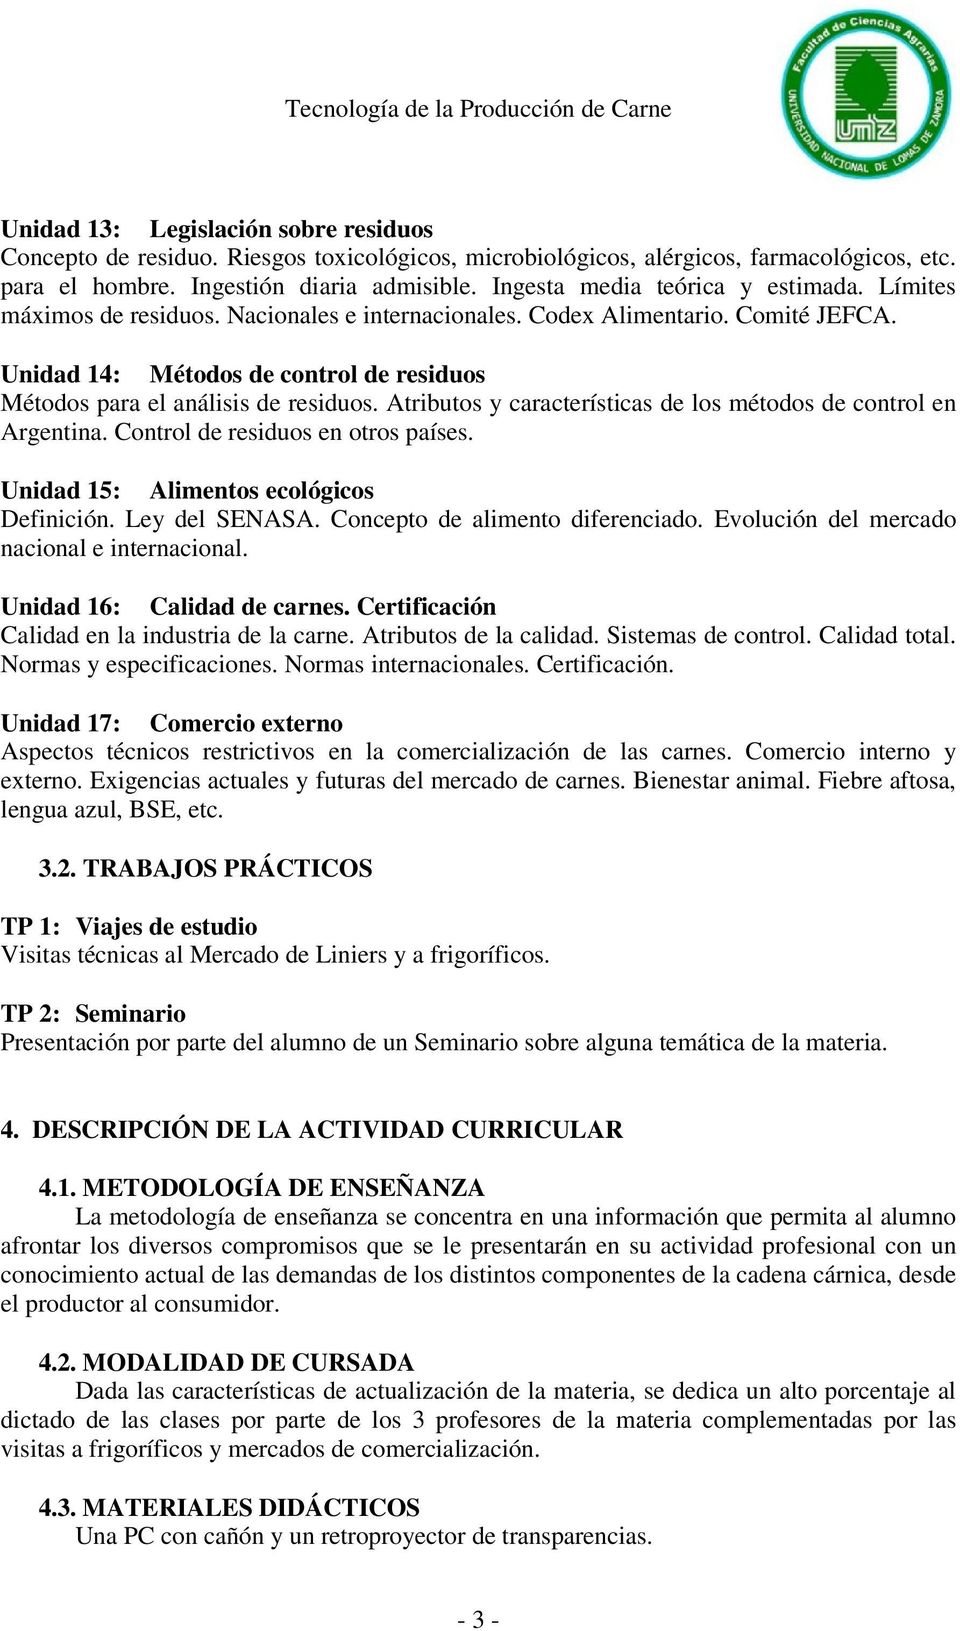 Unidad 14: Métodos de control de residuos Métodos para el análisis de residuos. Atributos y características de los métodos de control en Argentina. Control de residuos en otros países.